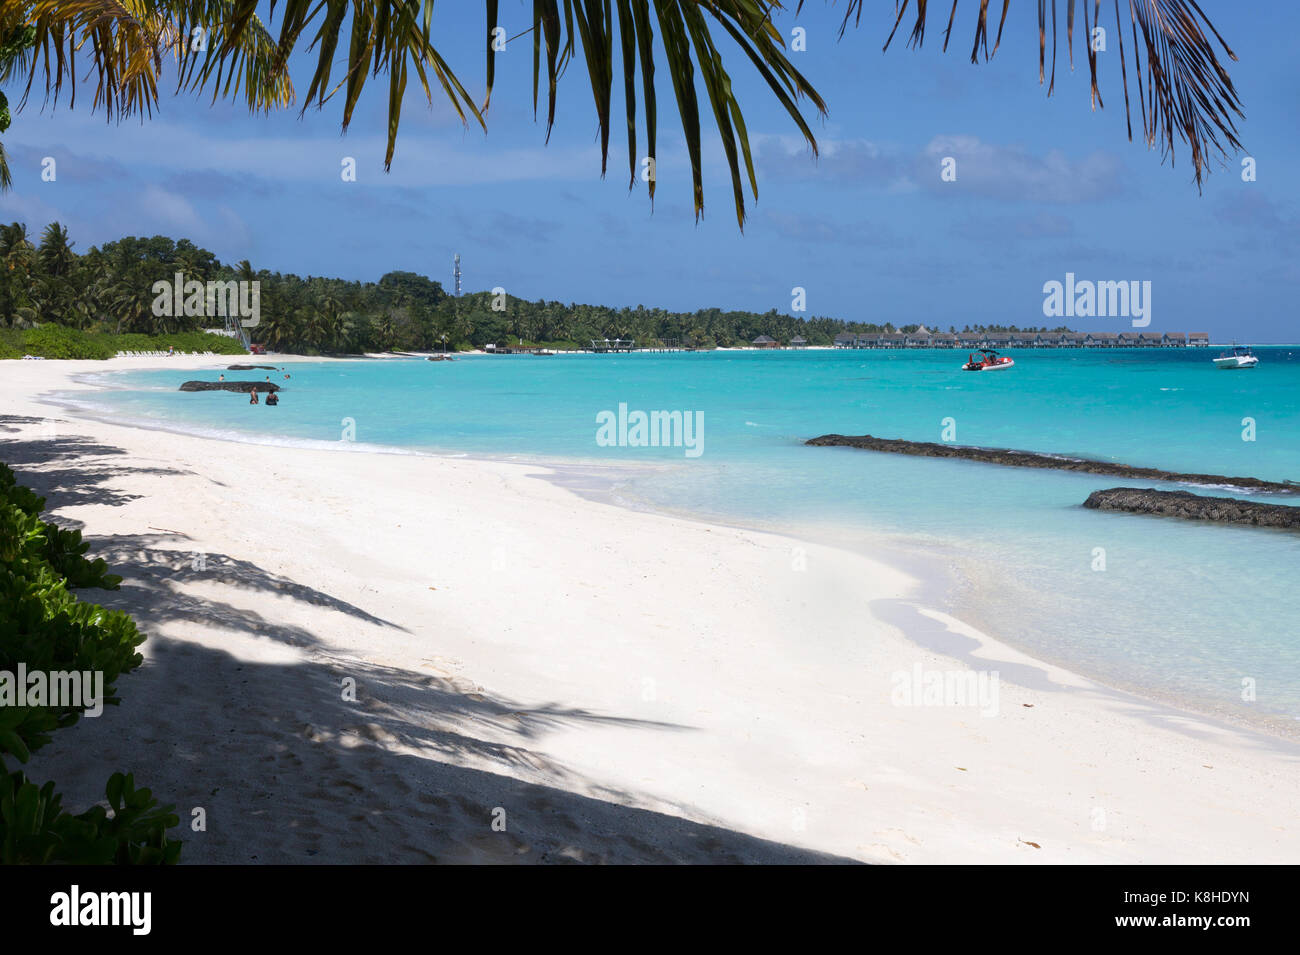 Plage des Maldives - la plage de sable blanc à l'atoll de Rasdhoo, aux Maldives, en Asie Banque D'Images